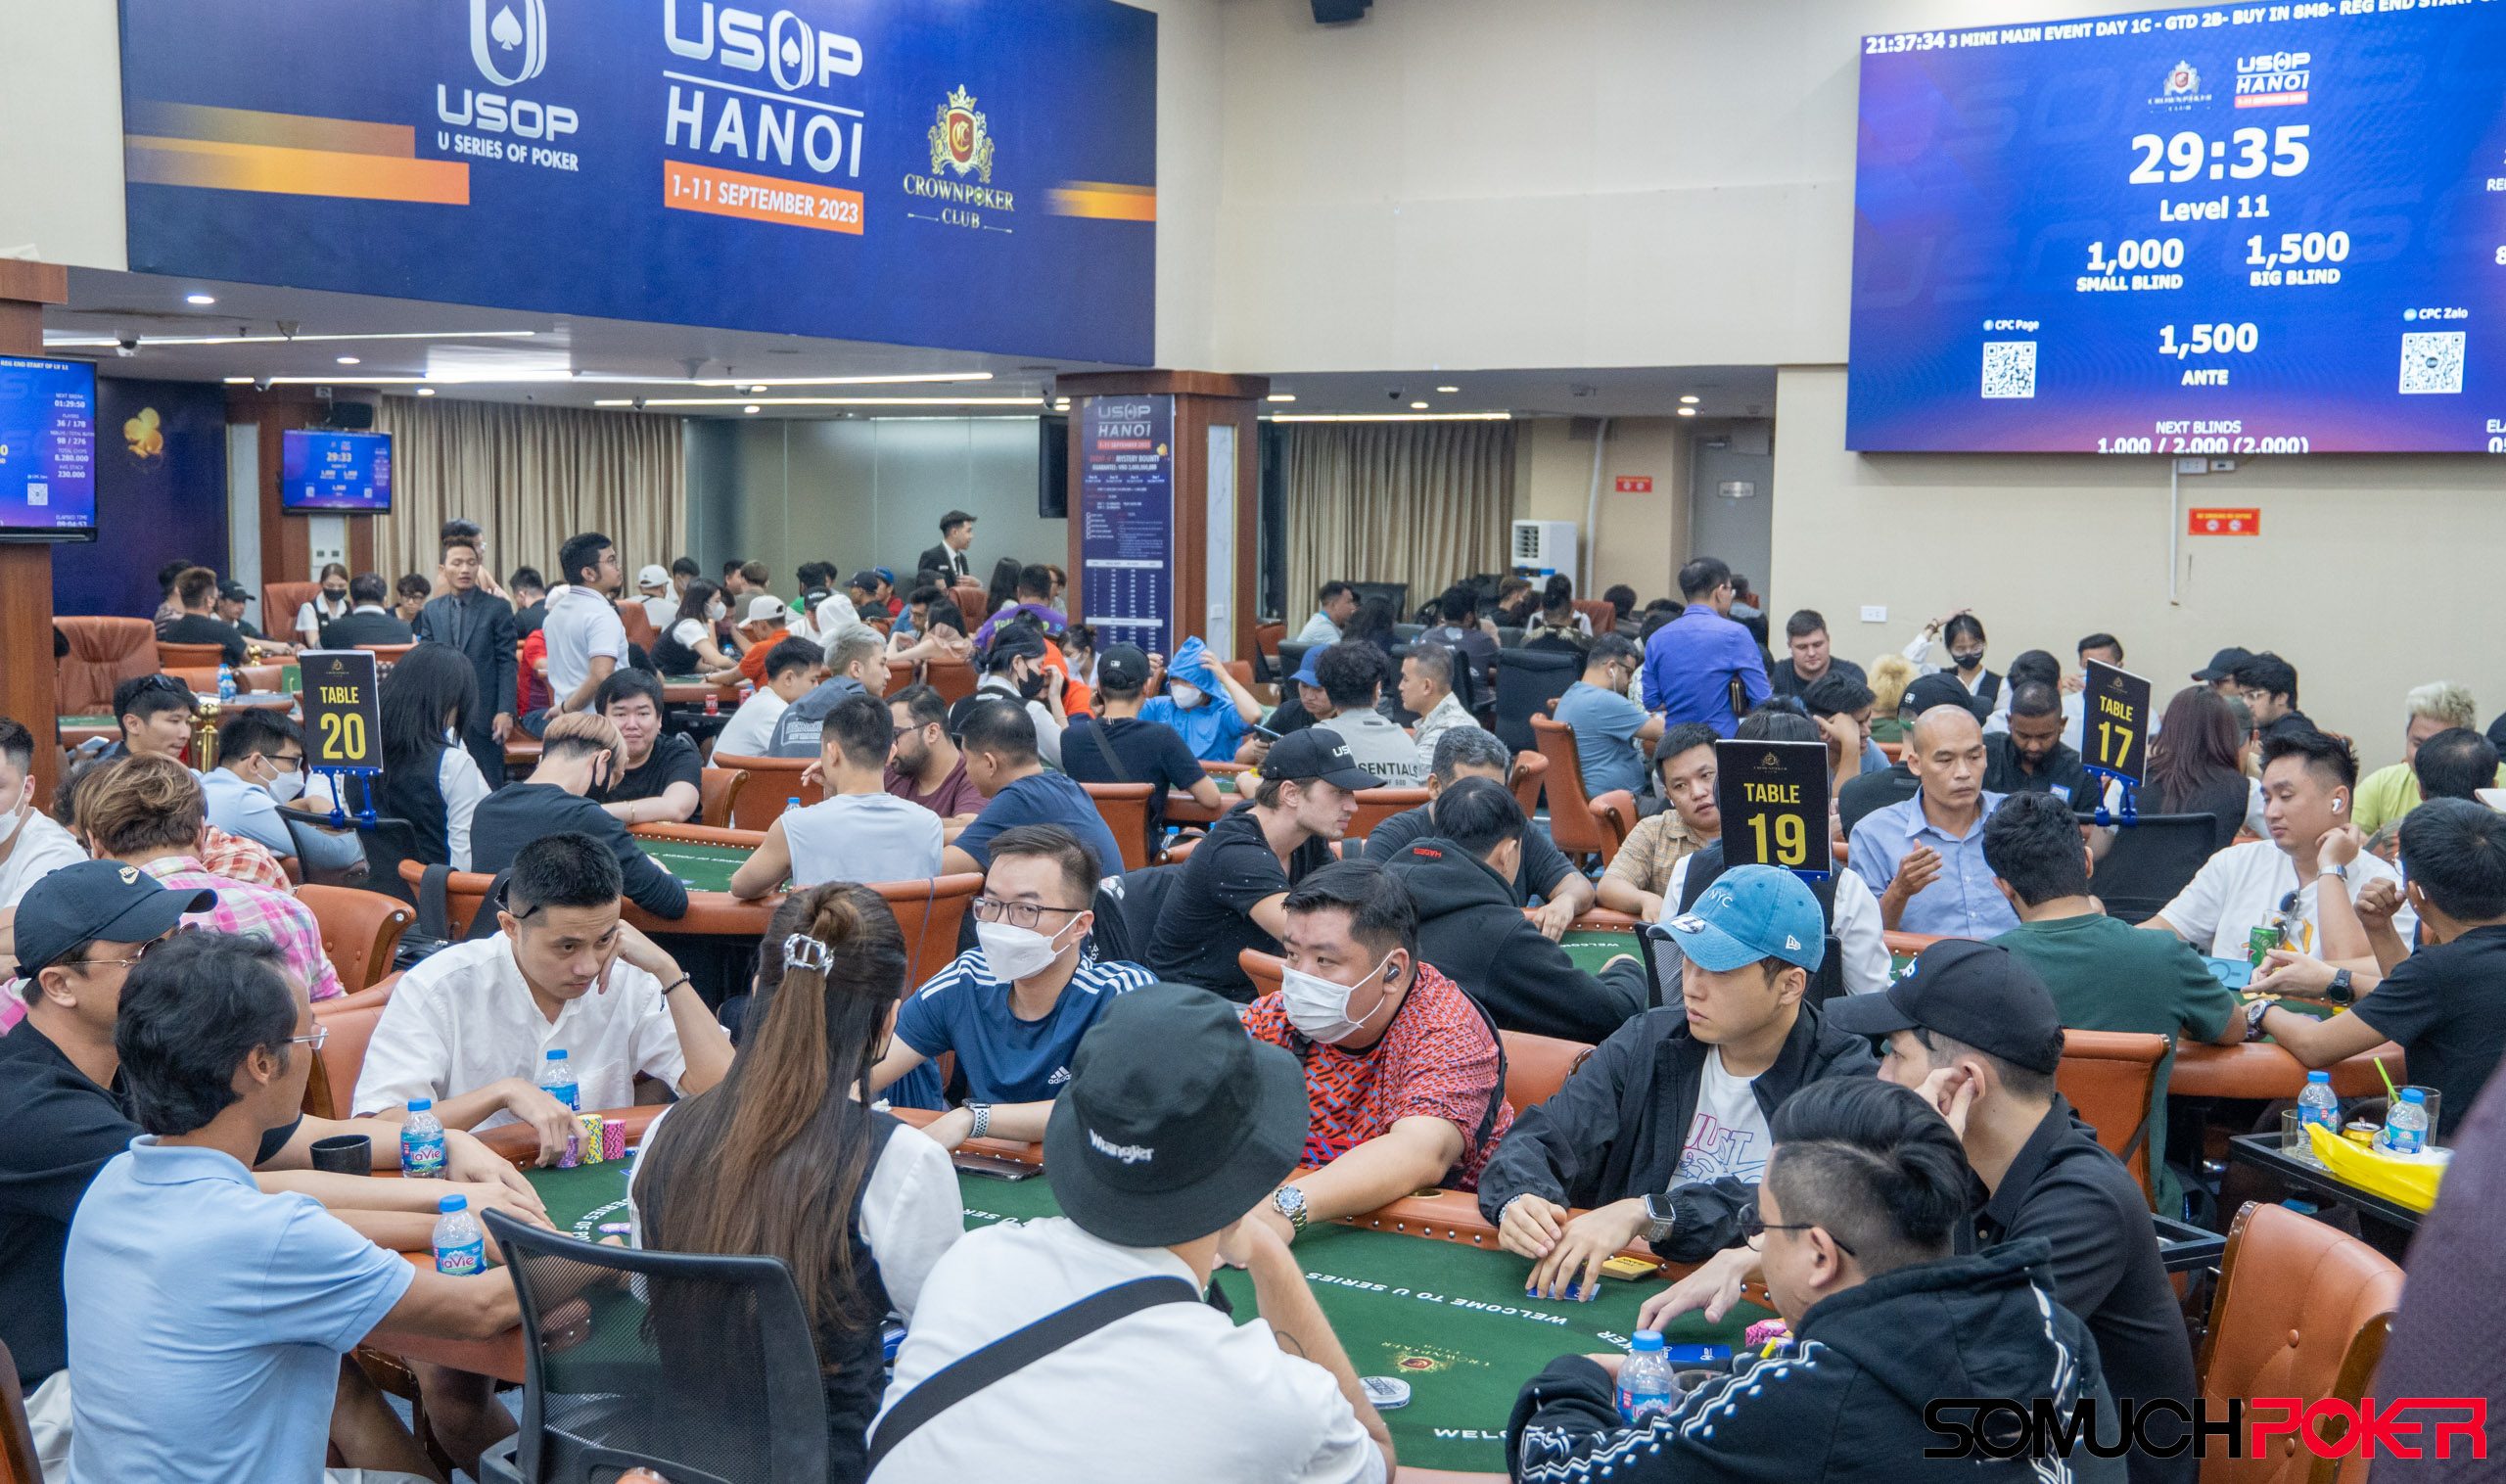 USOP Hanoi: Mini Main Event - Day 1C Updates